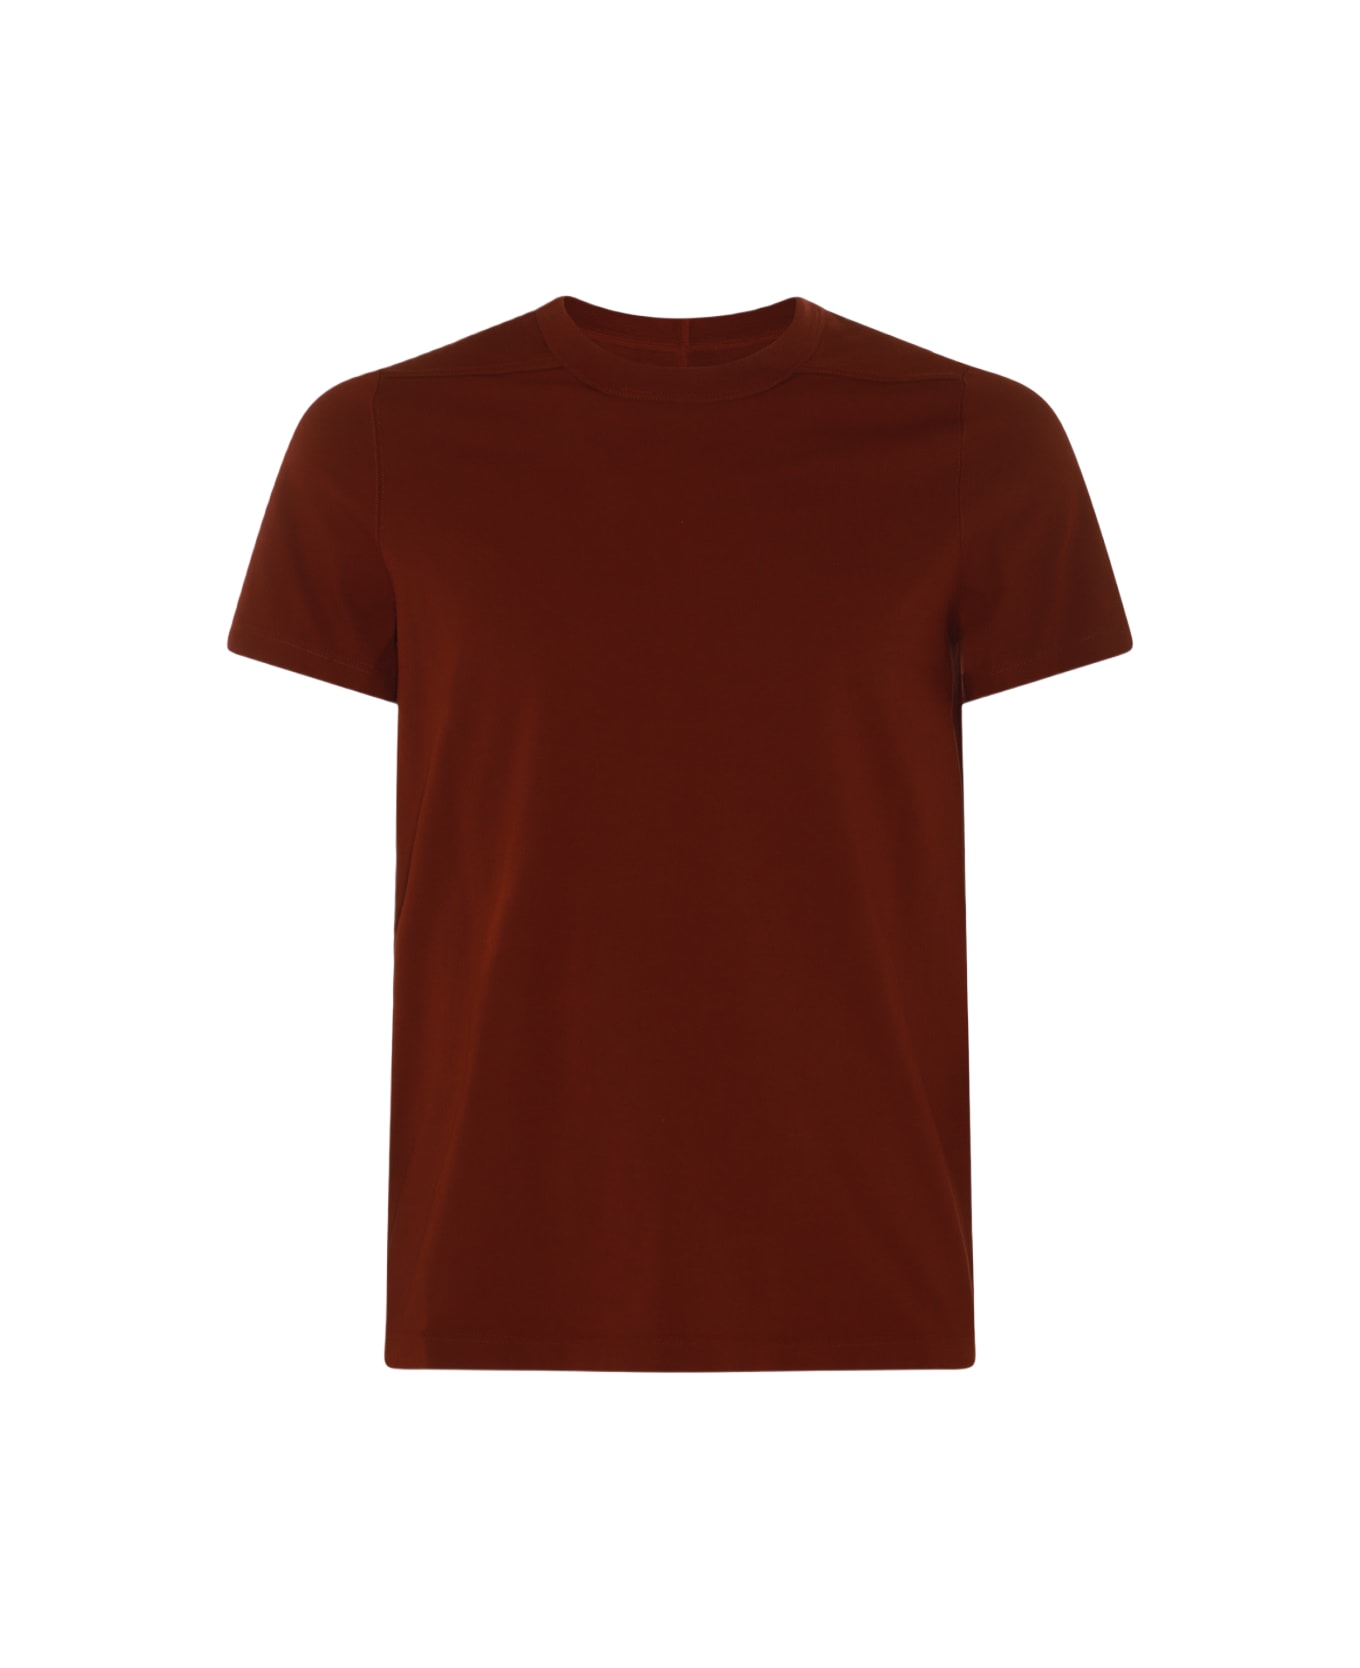 Rick Owens Dark Red Cotton T-shirt - HENNA シャツ